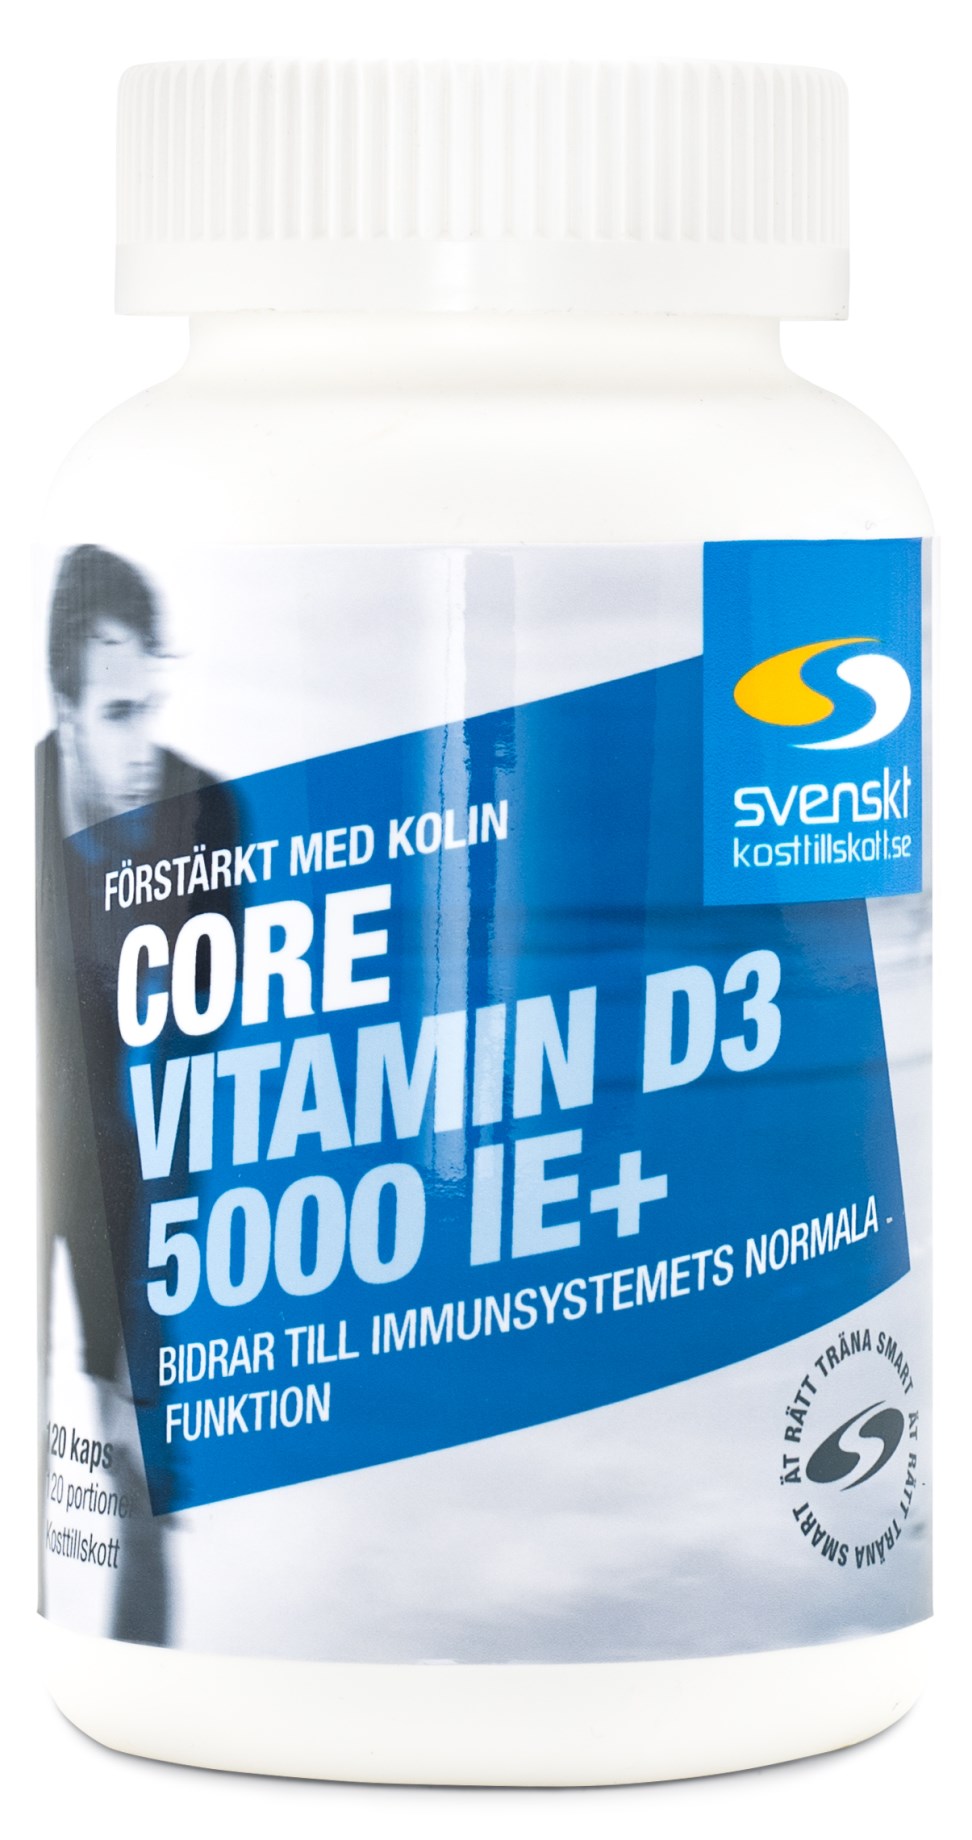 Bästa D-vitamintillskotten 2021 - Bäst i Test & Fakta